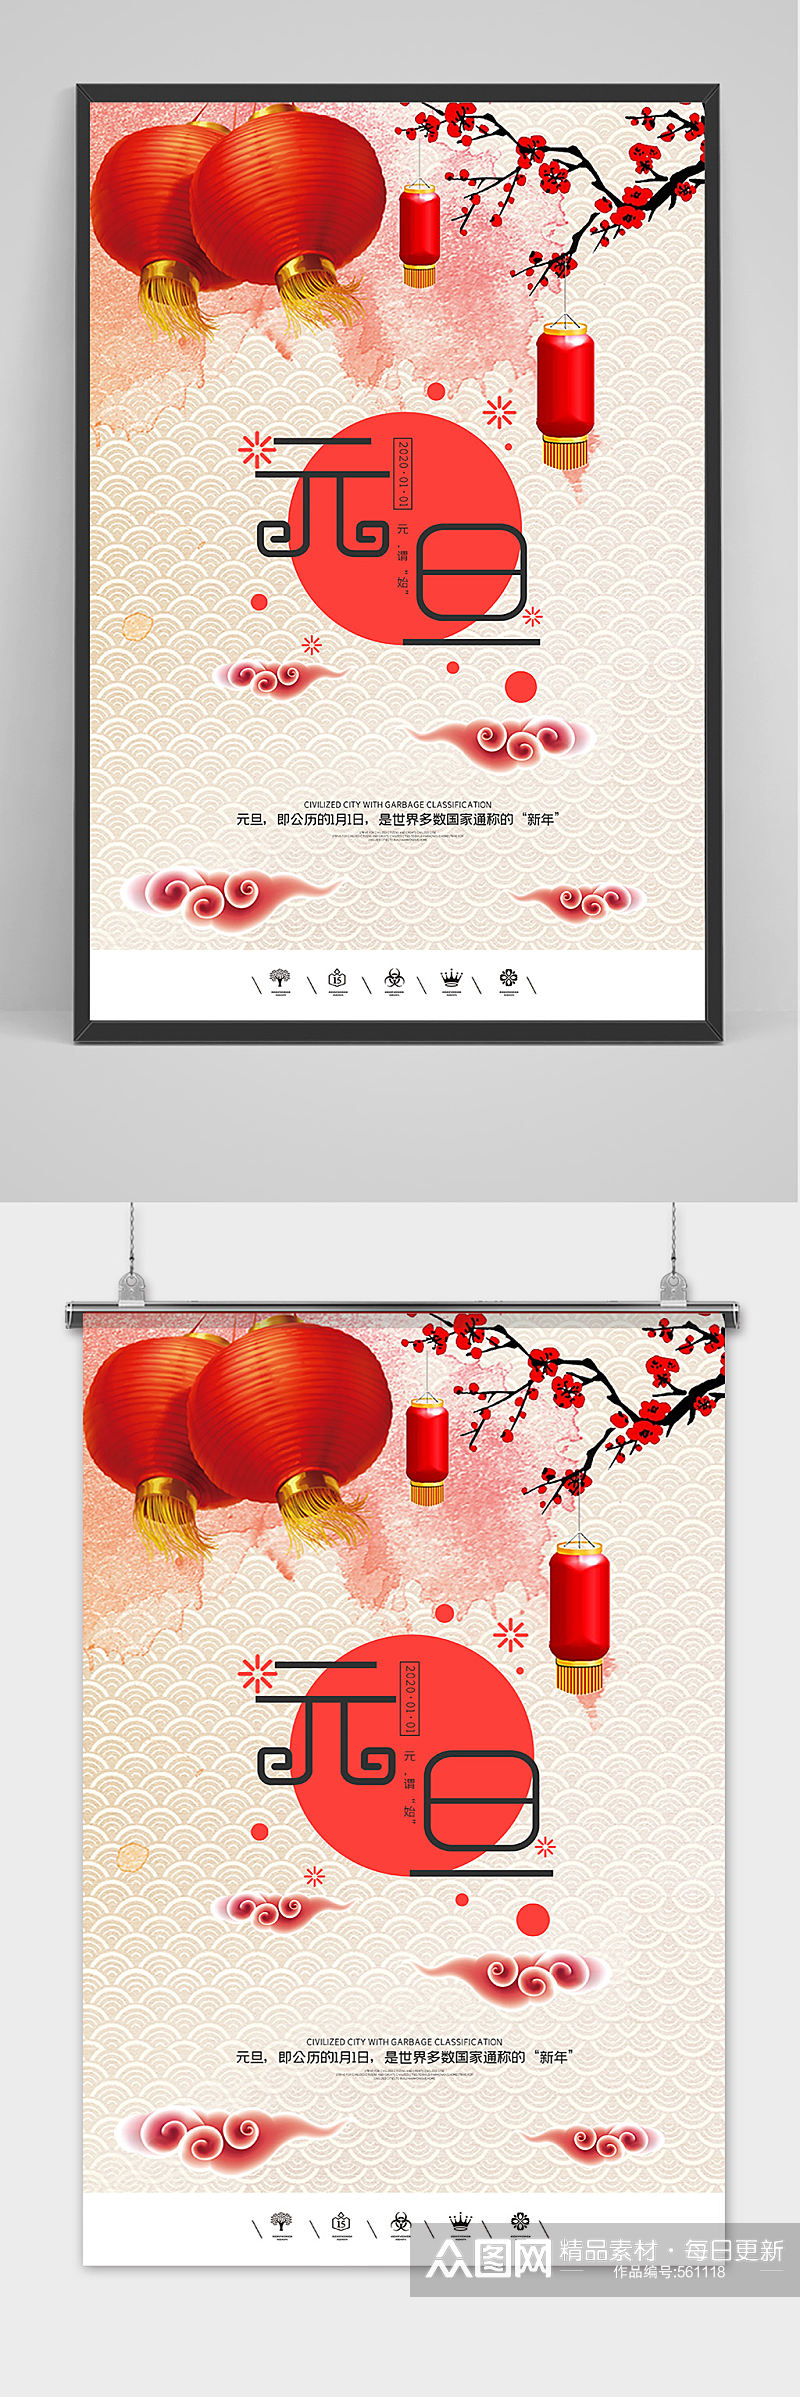 创意中国风2020鼠年元旦节户外海报素材